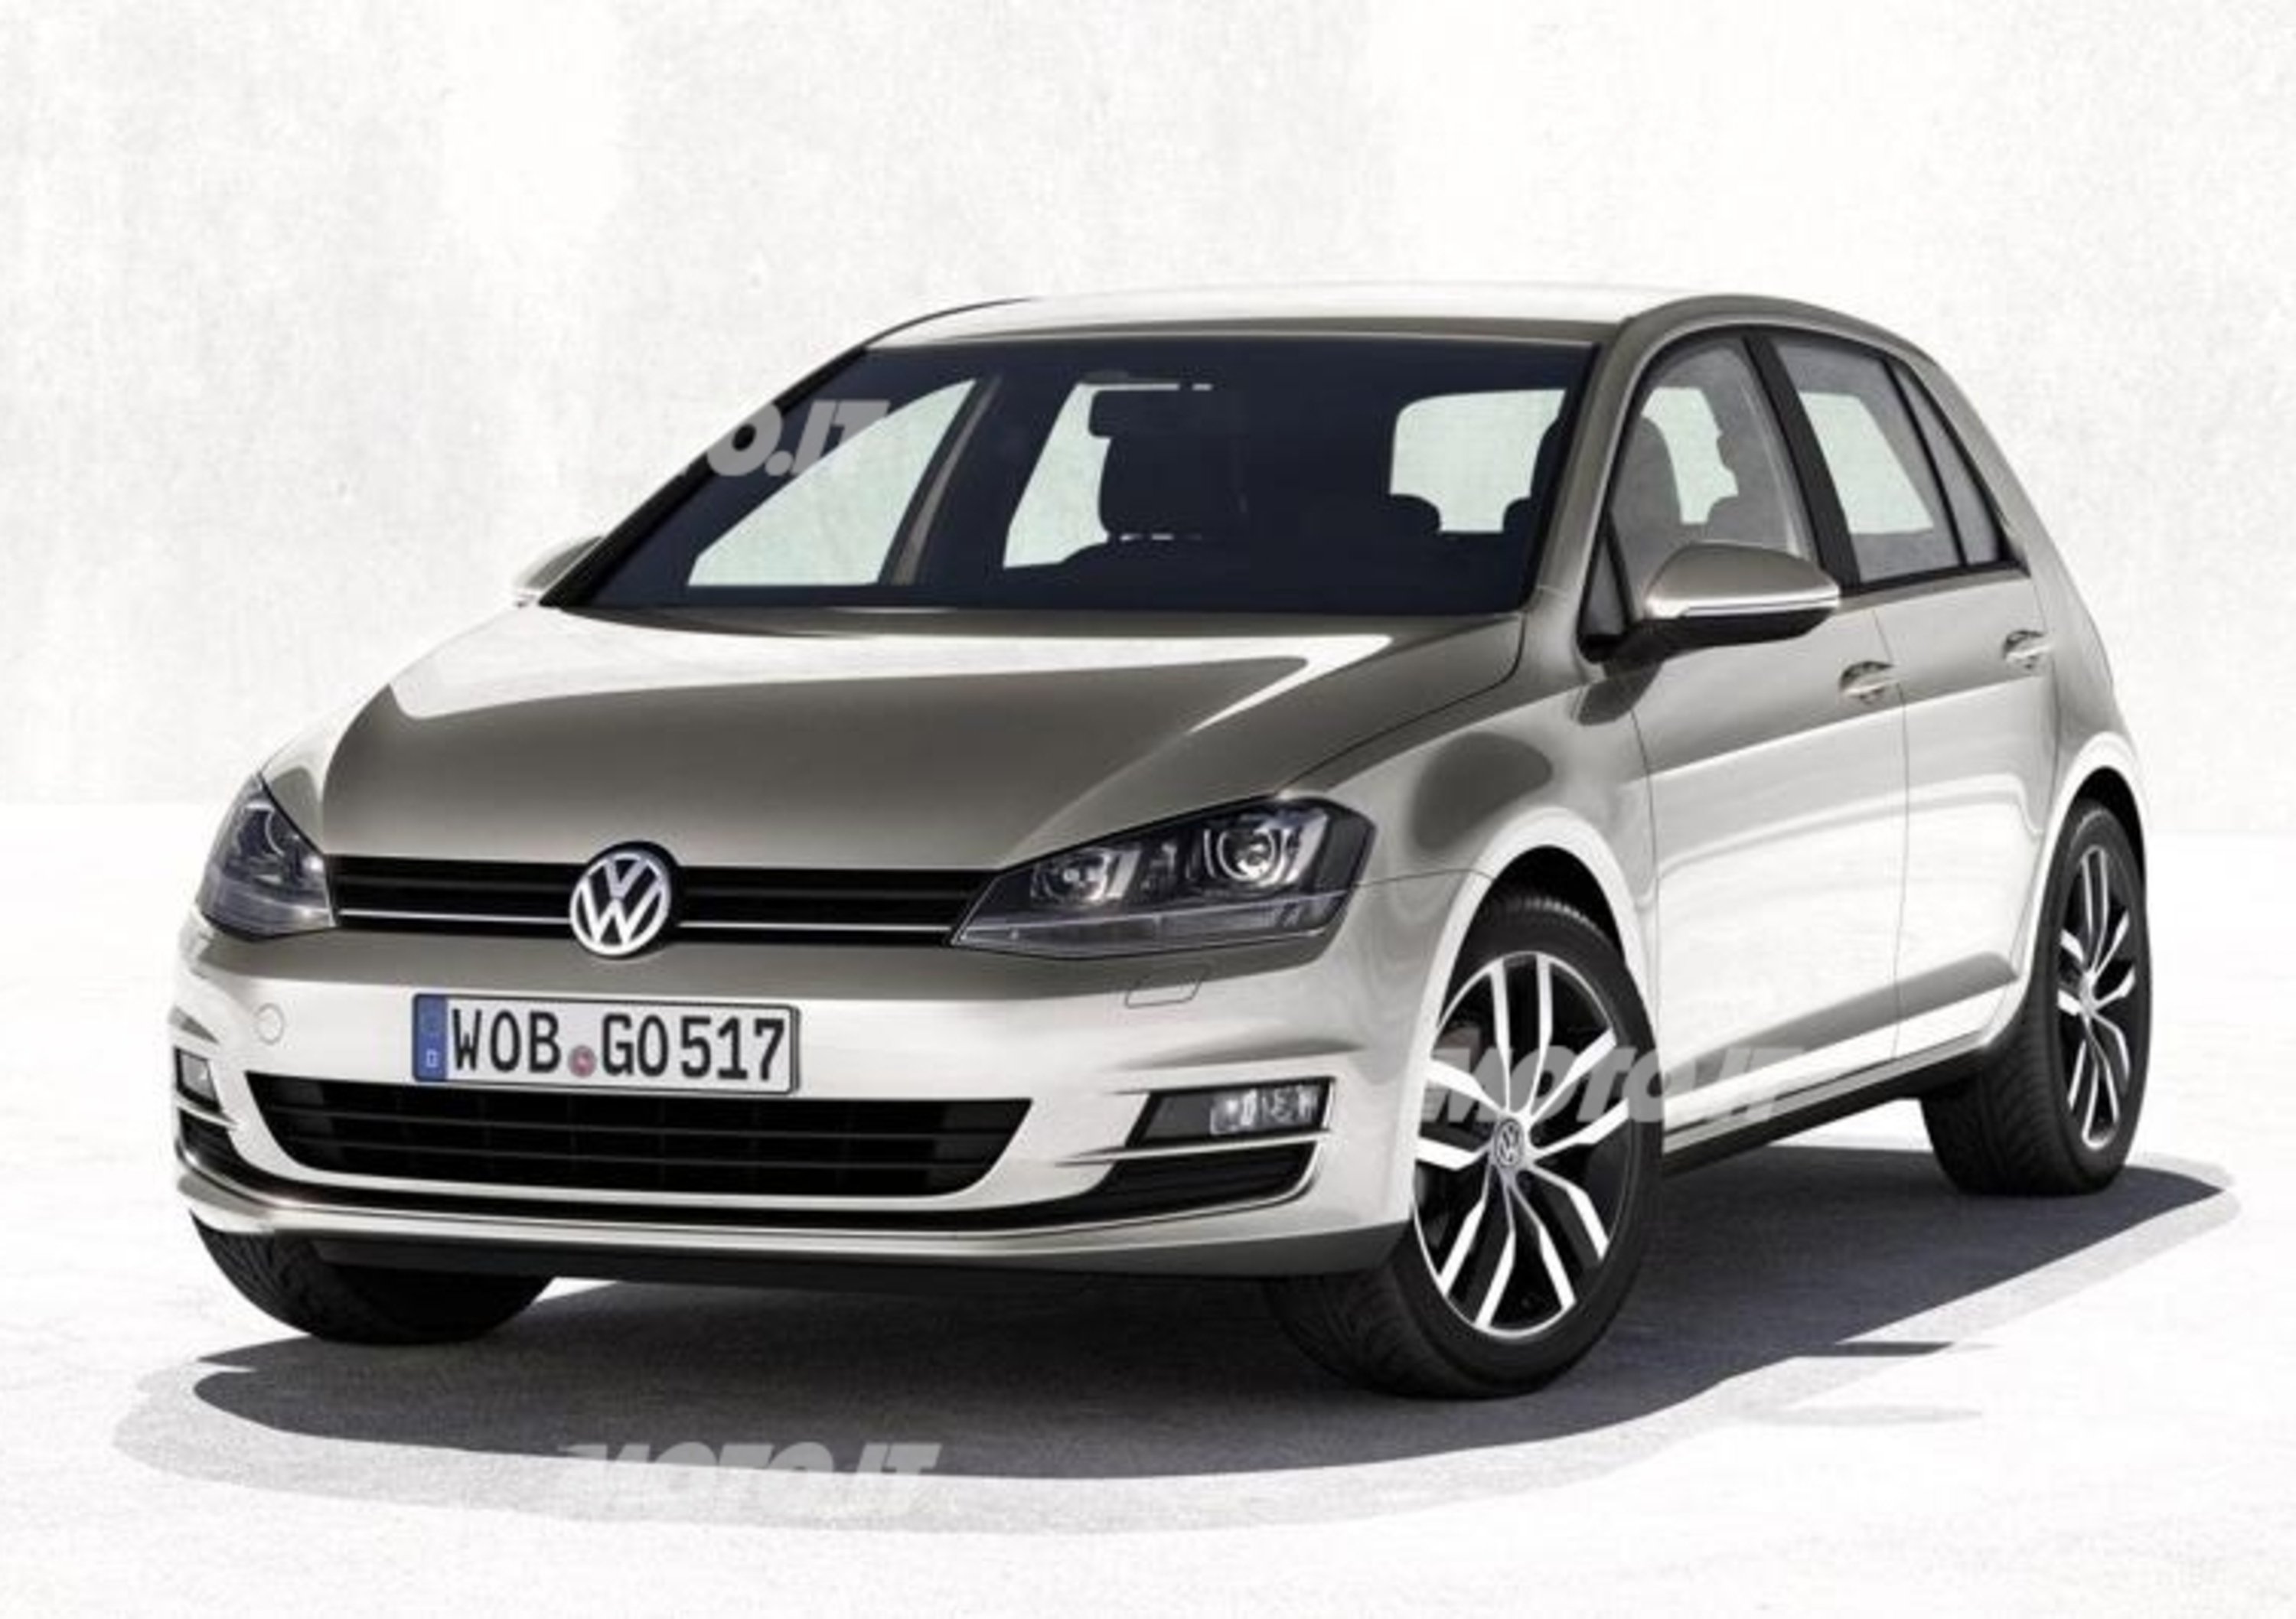 Nuova Volkswagen Golf VII: listino prezzi - News 